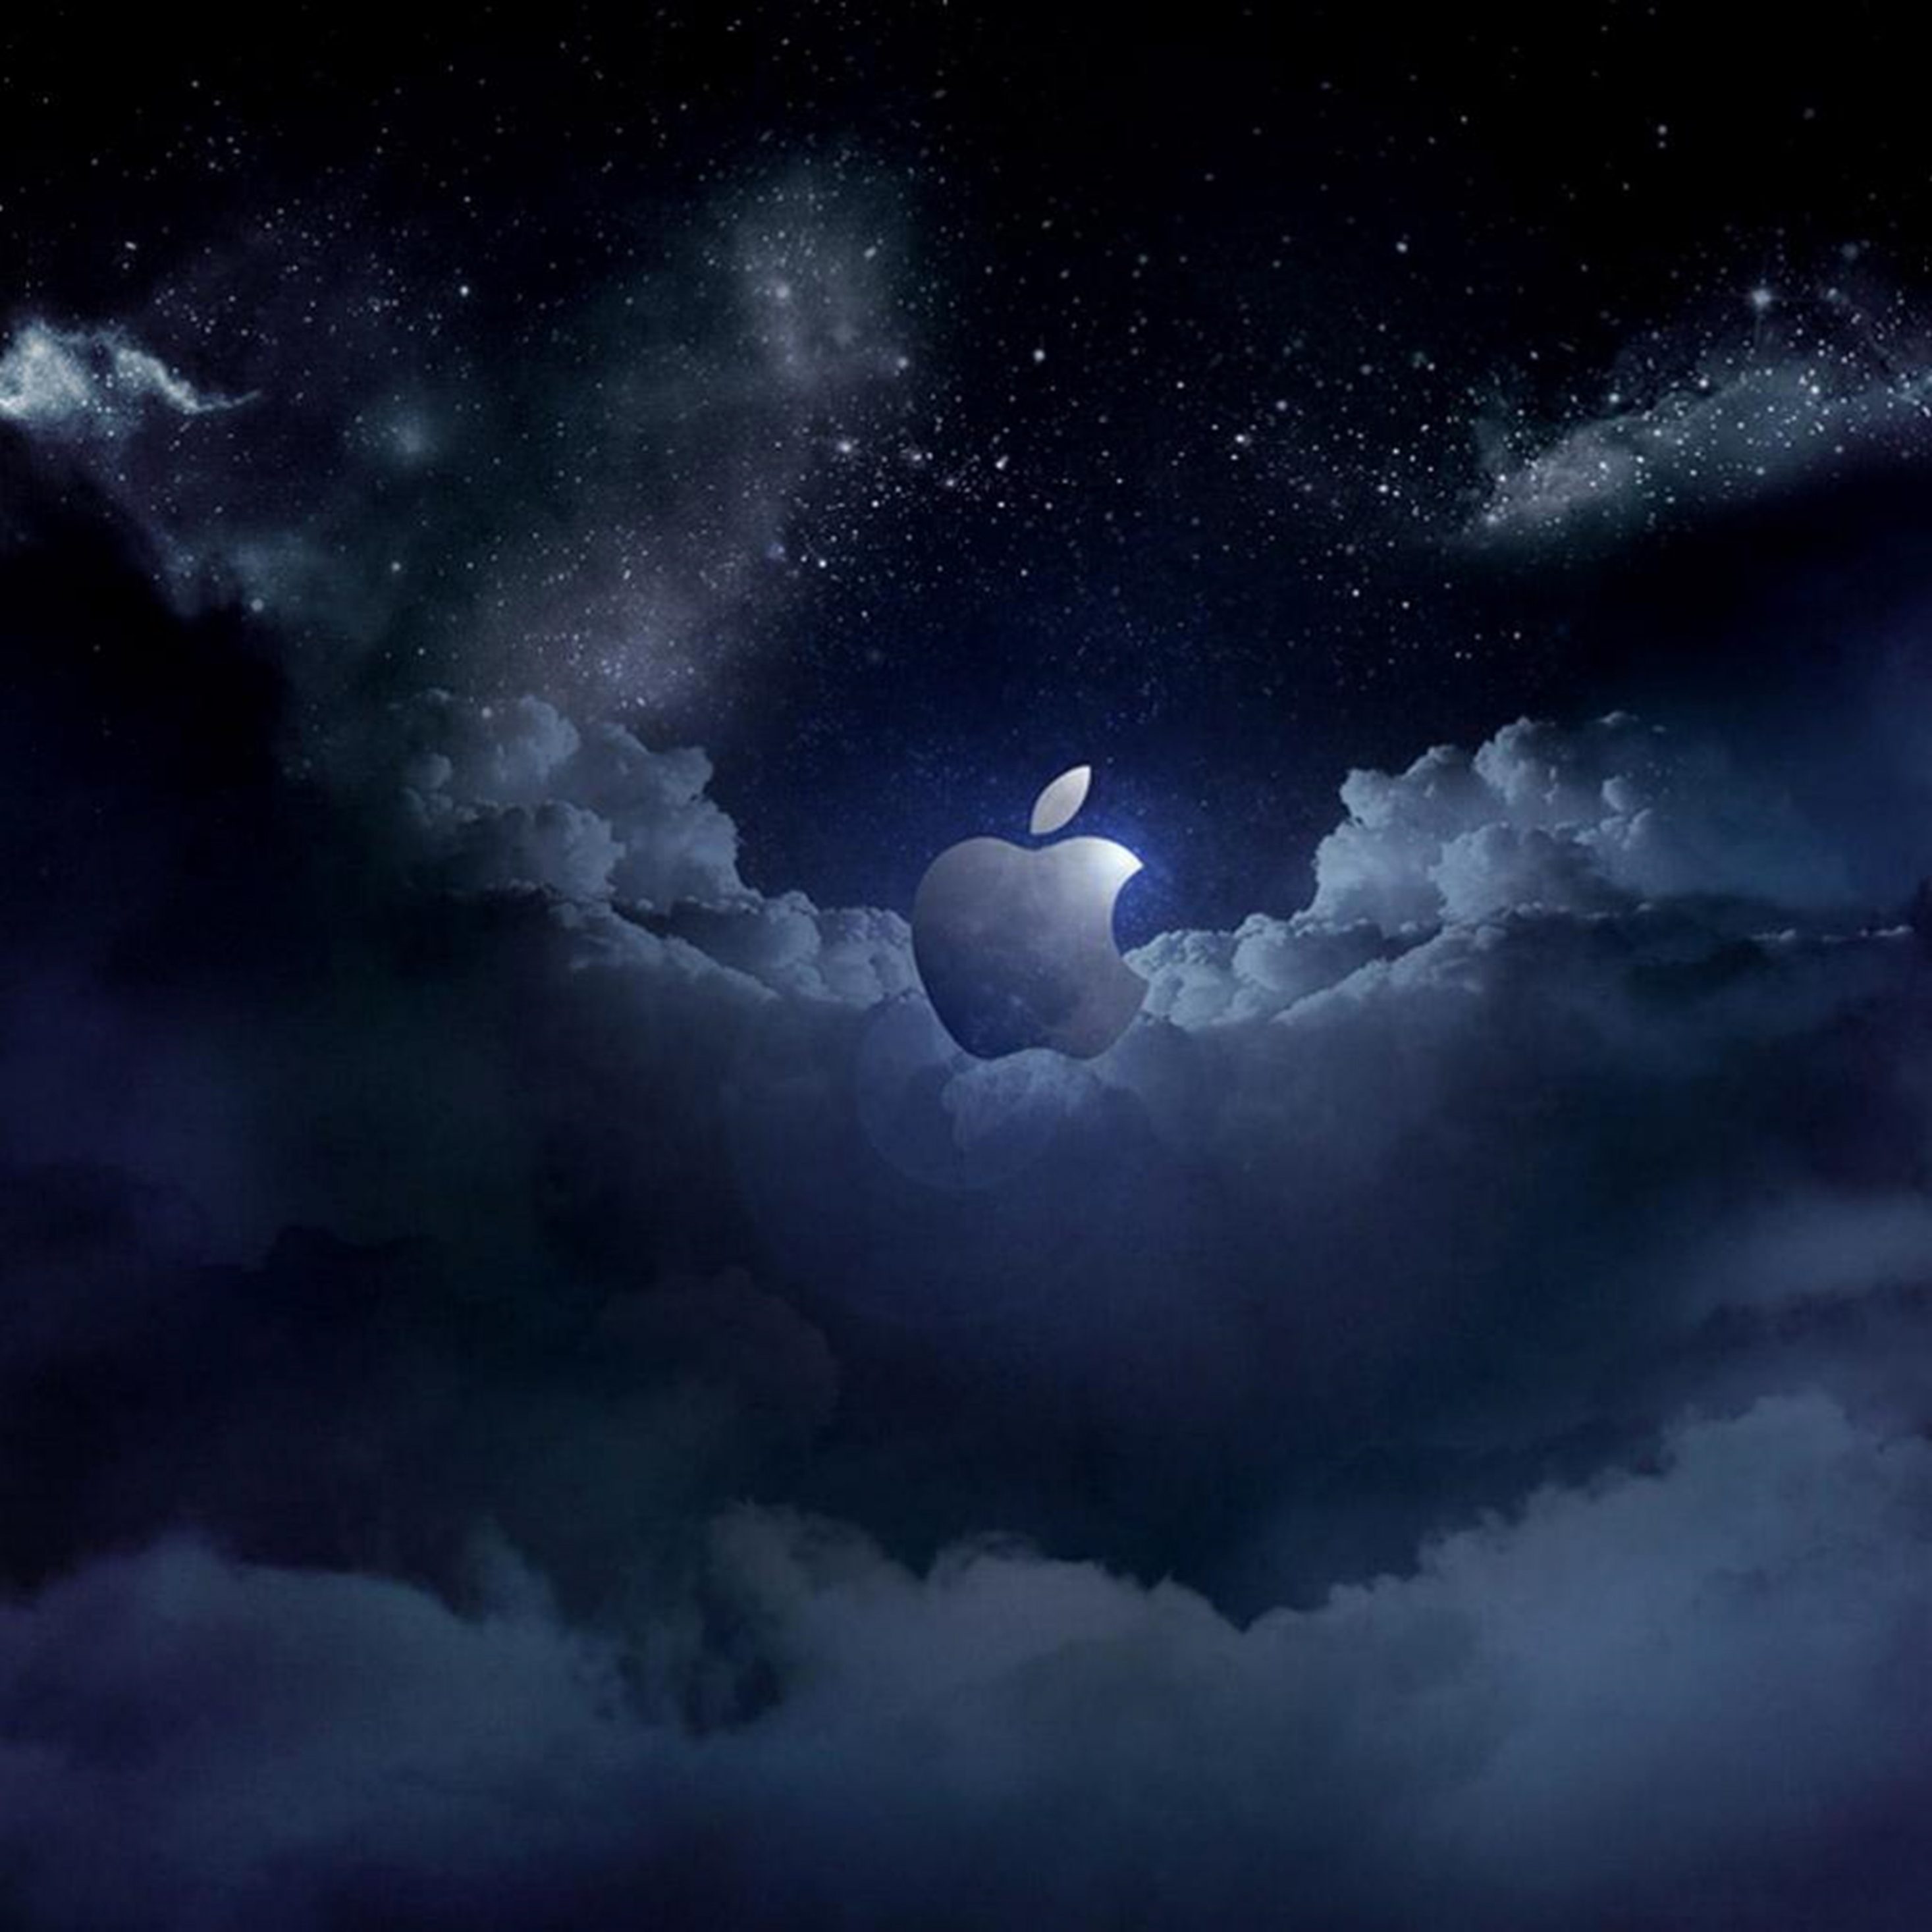 2934x2934 iOS iPad wallpaper 4k Apple Cloud at Night Ipad Wallpaper 2934x2934 pixels resolution